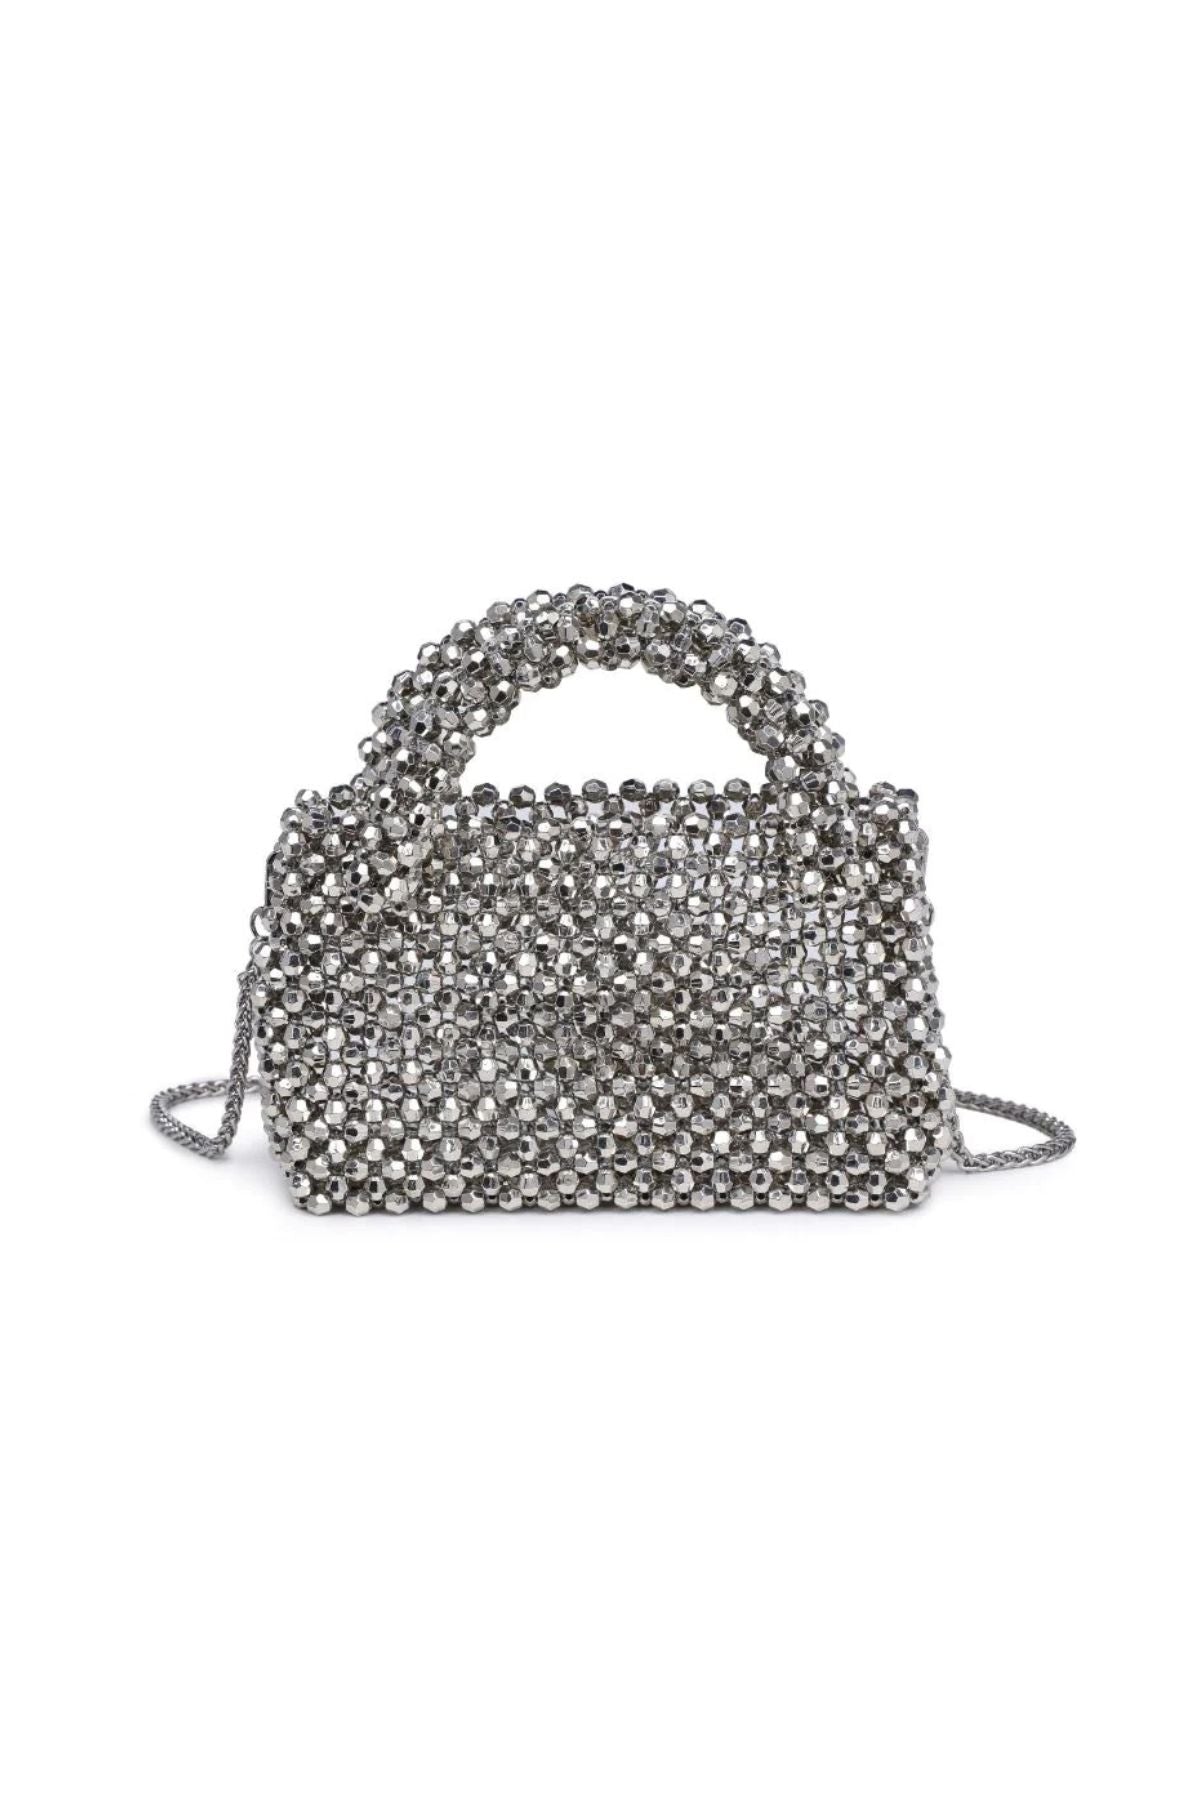 Silver beaded handbag